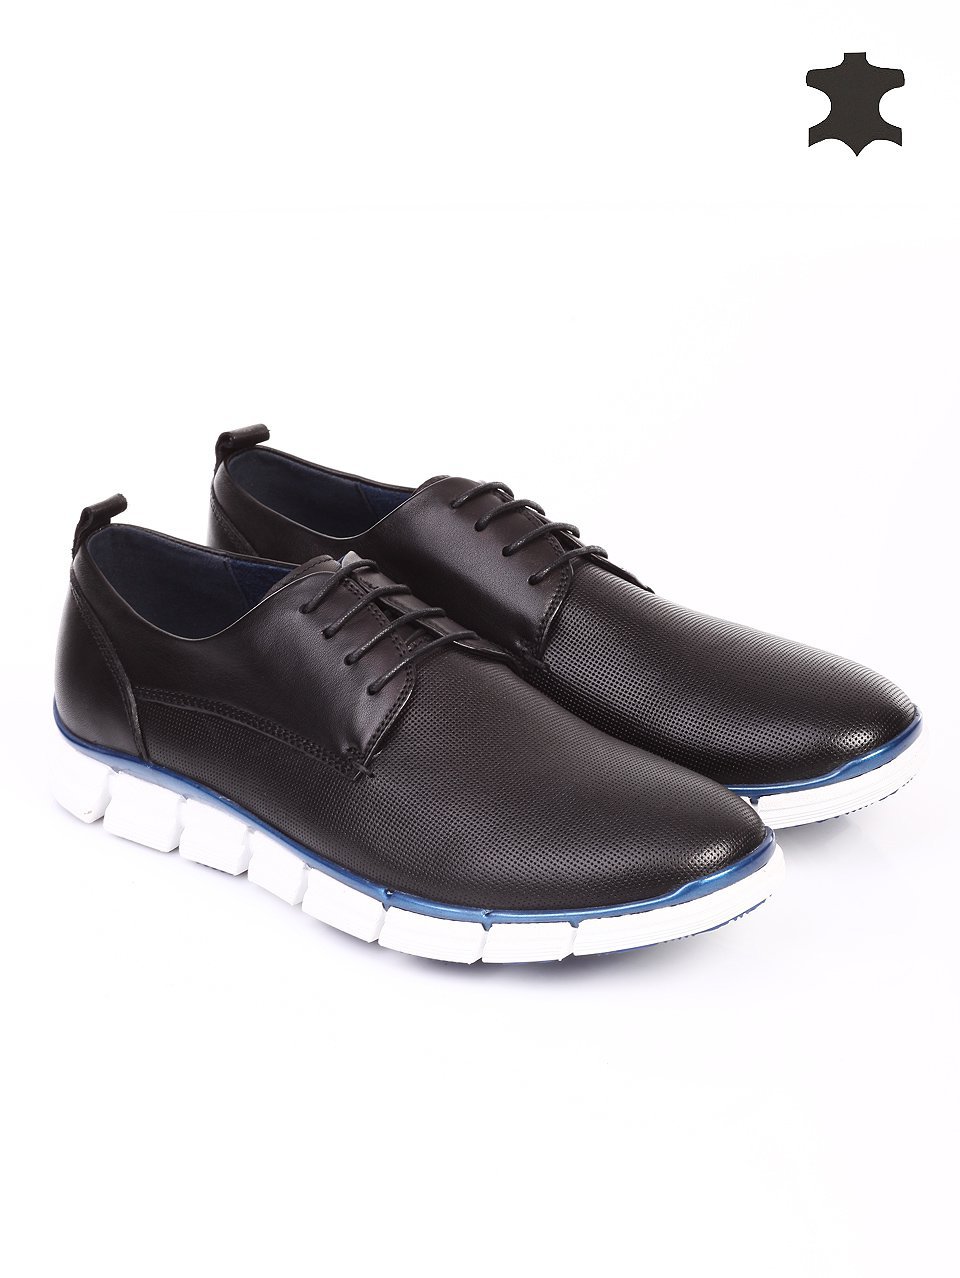 Спортно-елегантни мъжки обувки от естествена кожа 7N-15718 black